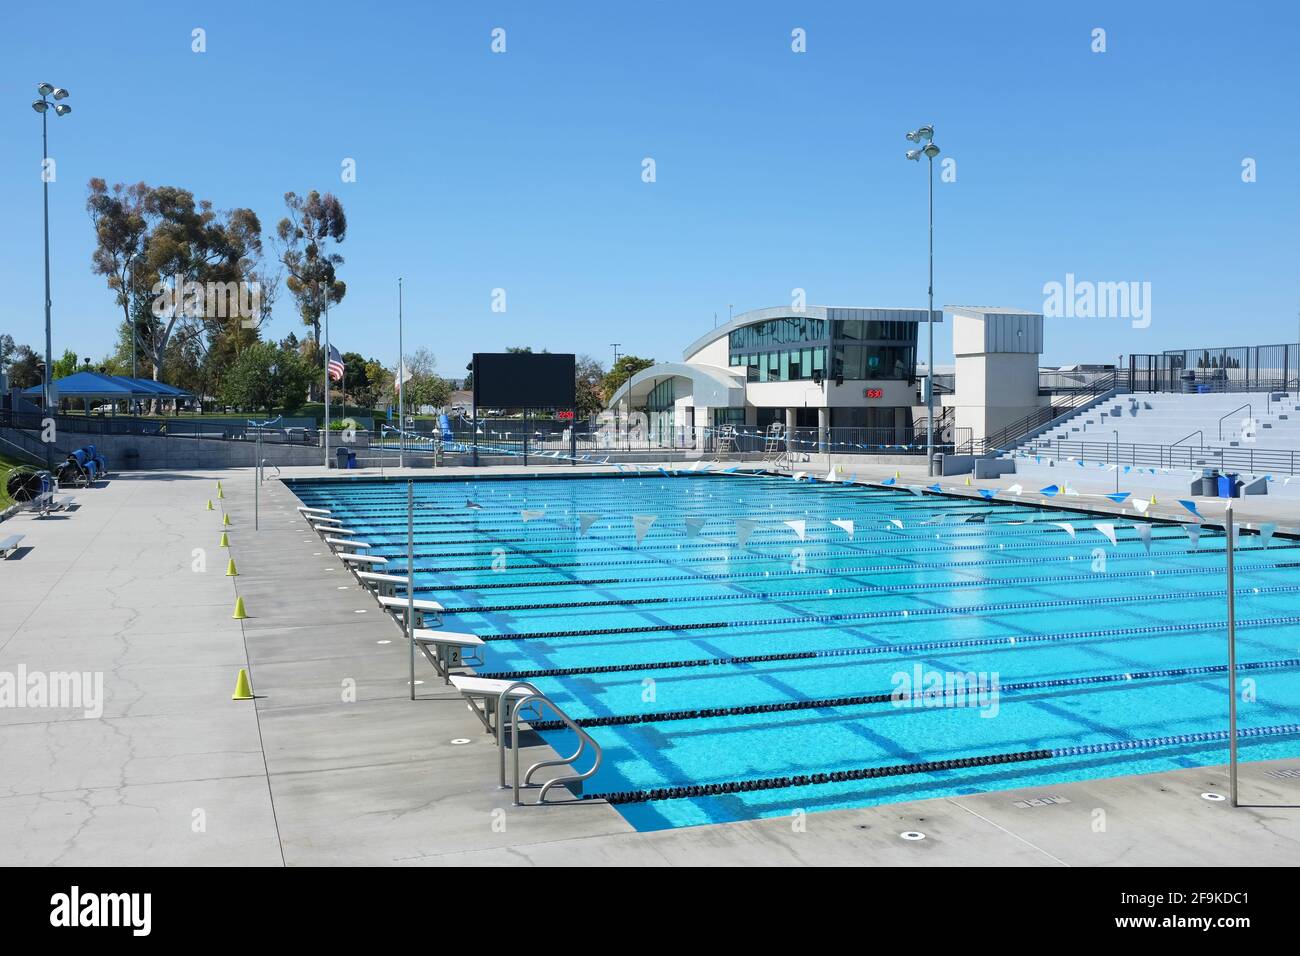 IRVINE, CA - 18. April 2021: William Woollett Aquatics Center. Ein Veranstaltungsort für lokale, regionale und nationale Wettkampfveranstaltungen mit zwei 50-Meter-Pools Stockfoto